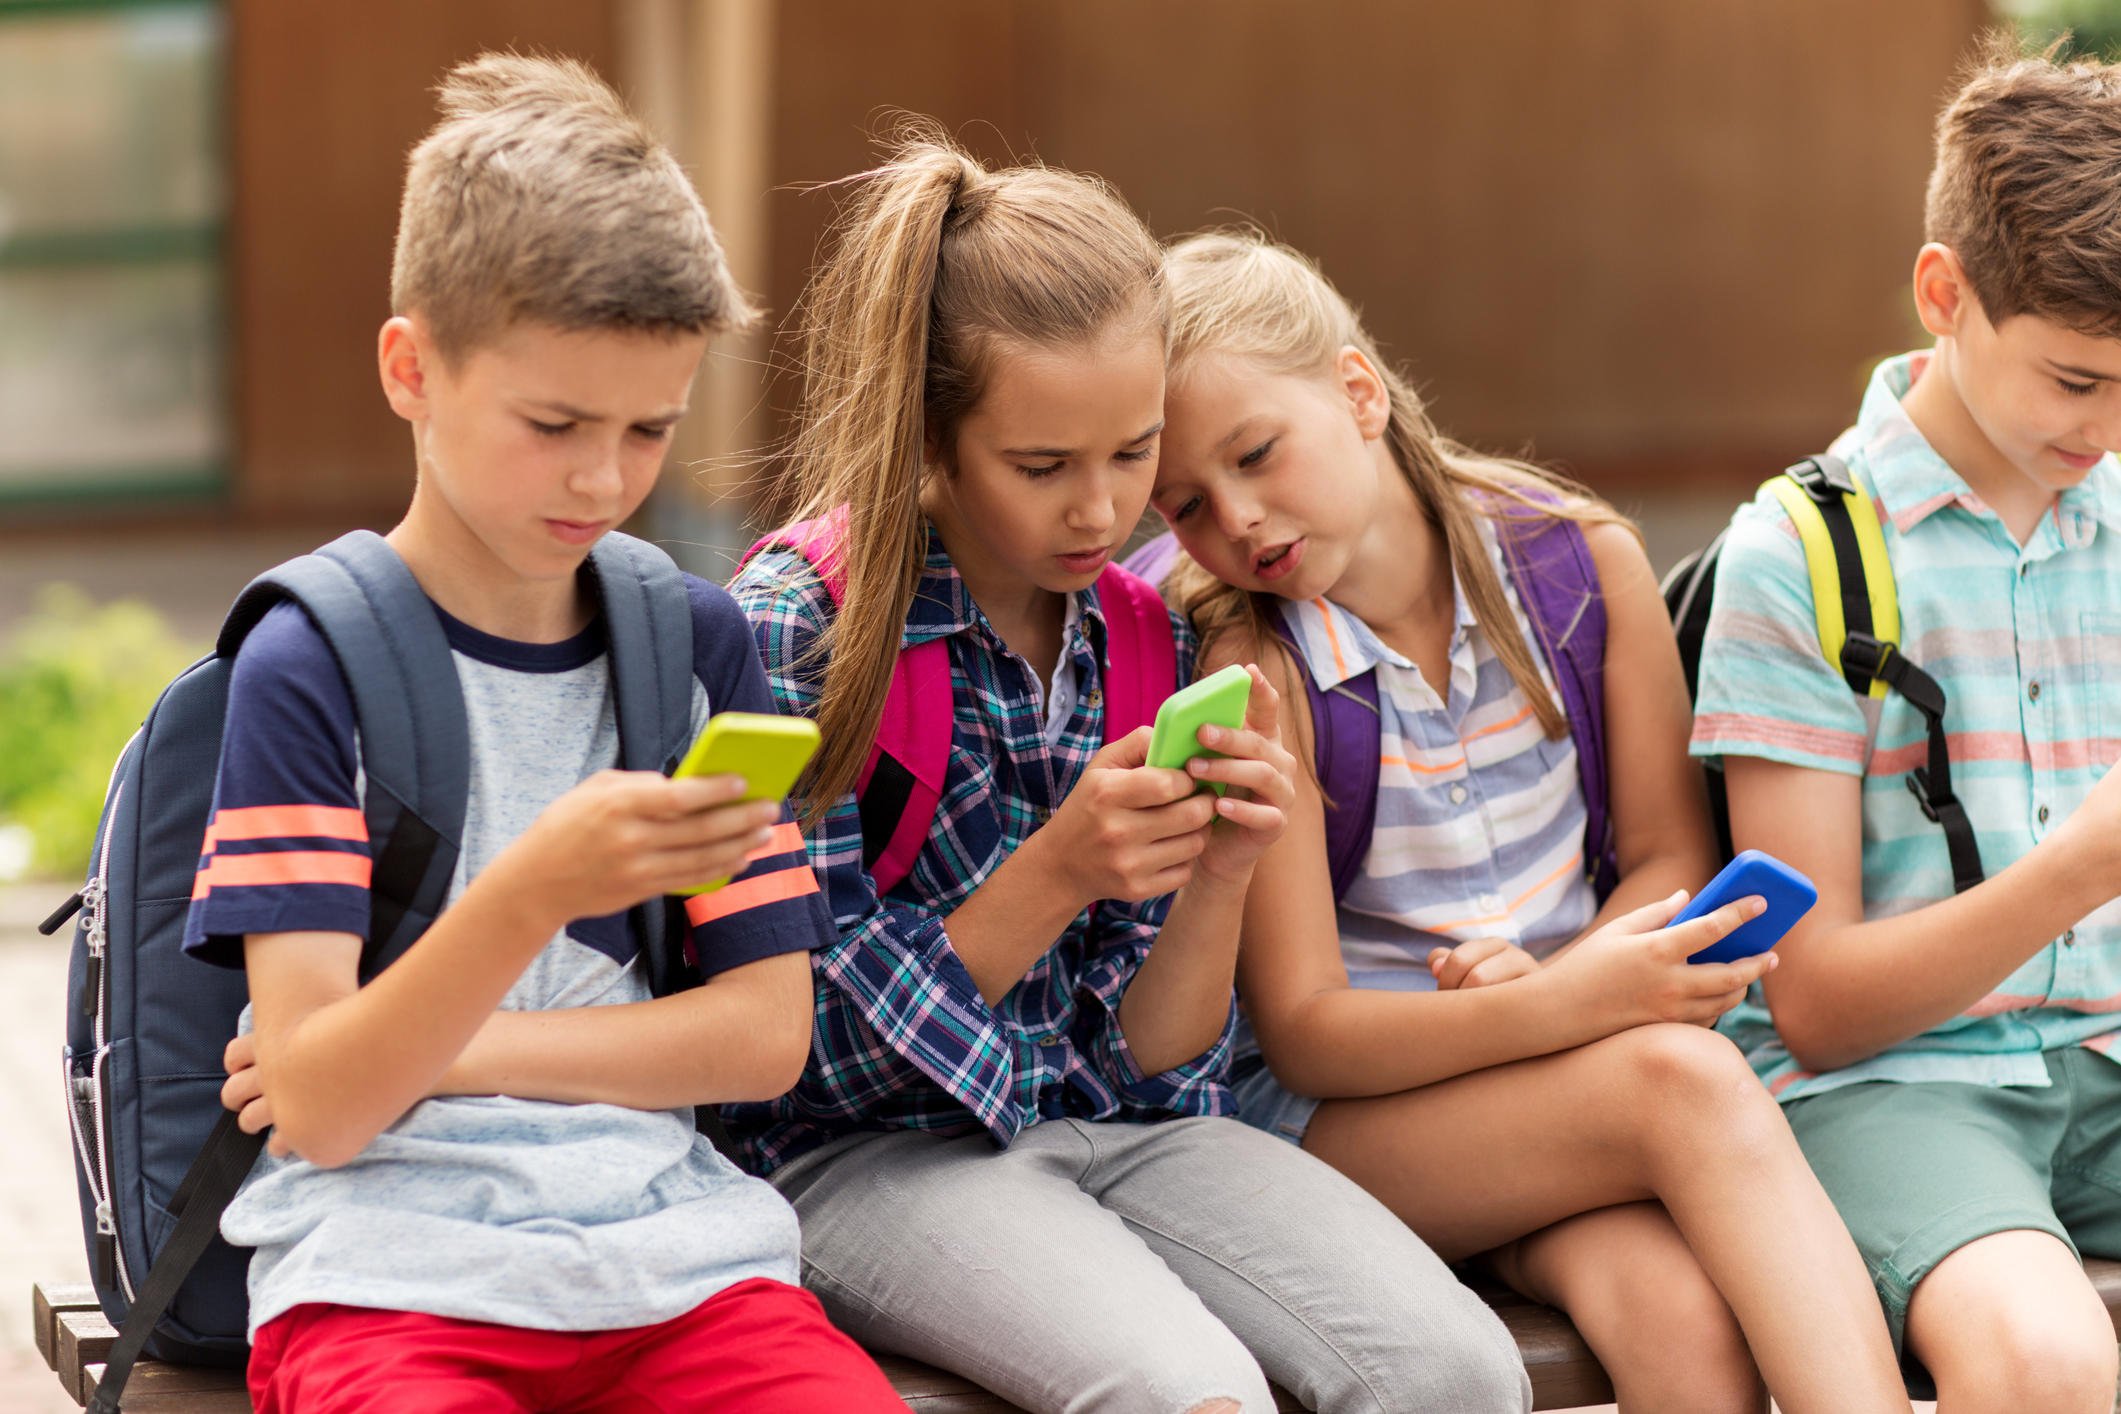 Τα συγχαρητήρια μας στους Ολλανδούς που απαγορεύουν τα κινητά στις σχολικές αίθουσες